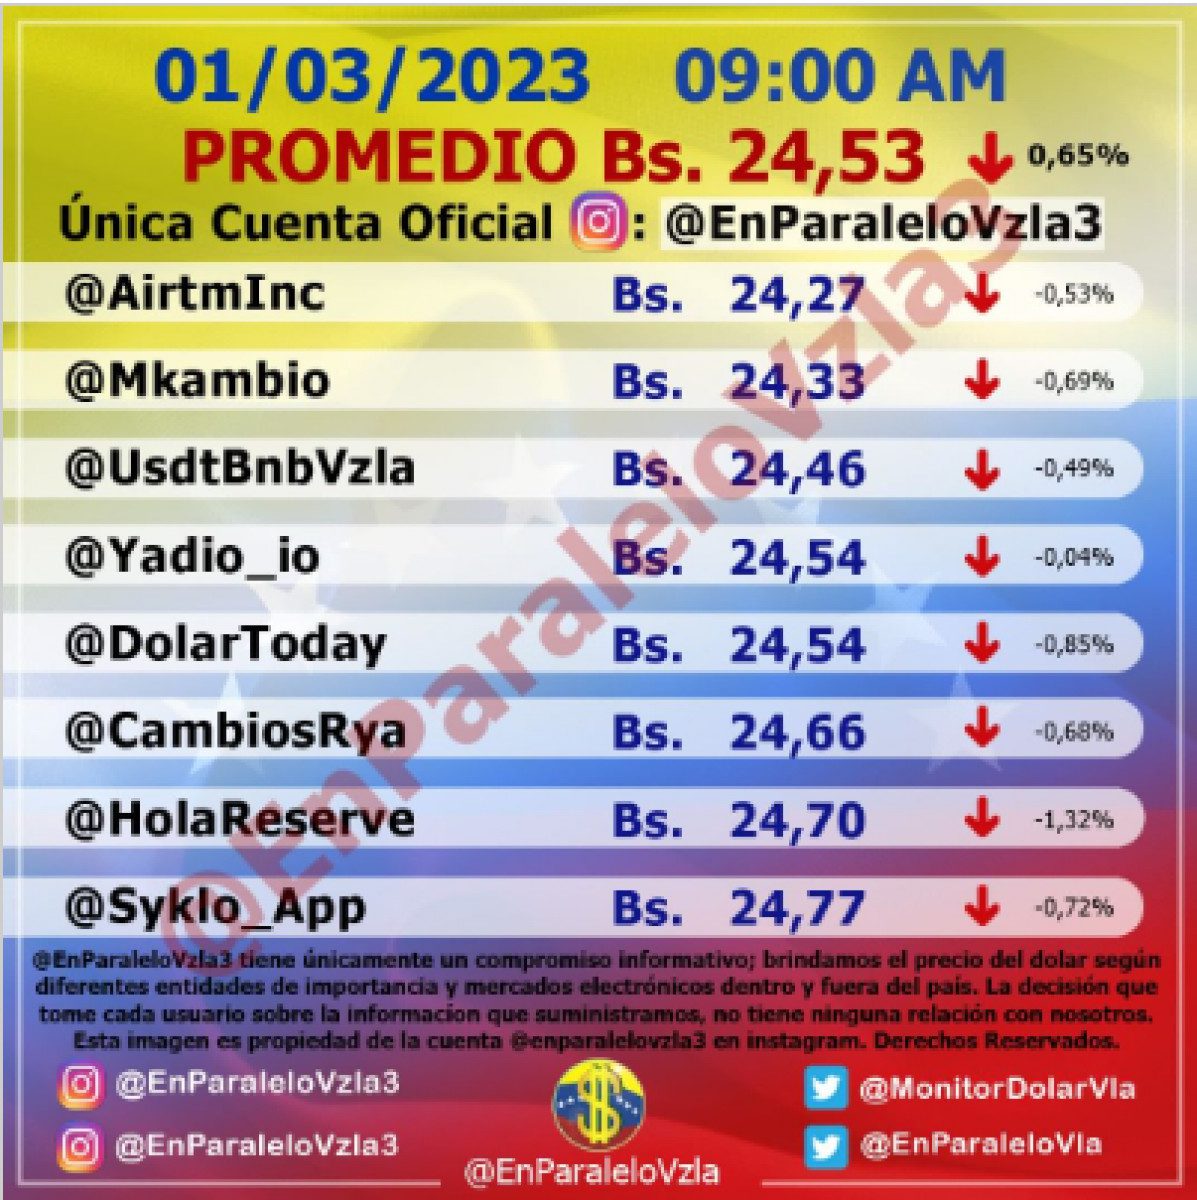 dolartoday en venezuela precio del dolar este miercoles 1 de marzo de 2023 laverdaddemonagas.com en paralelo3